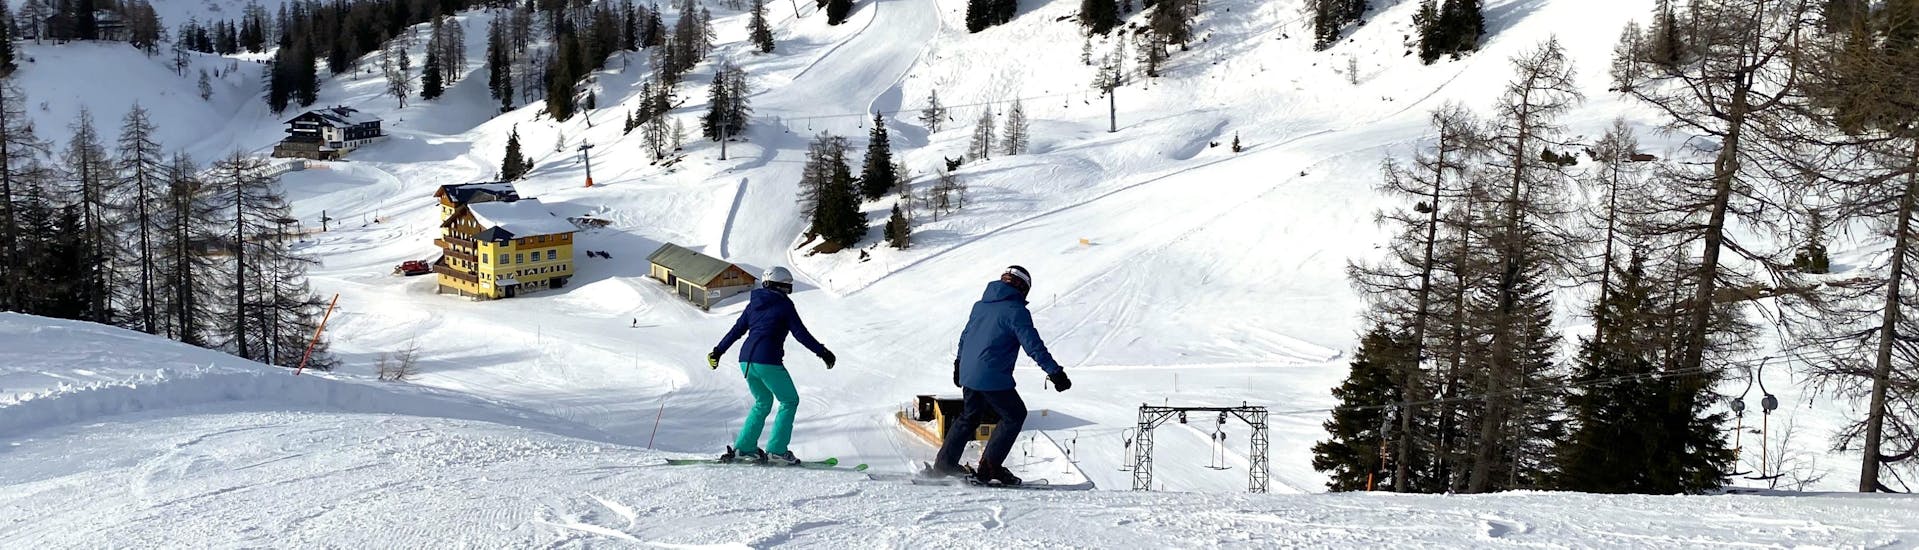 Zwei Teilnehmer genießen eine Abfahrt am Schnee in Tauplitz in einem Kurs von Gipfelmomente Tauplitz.